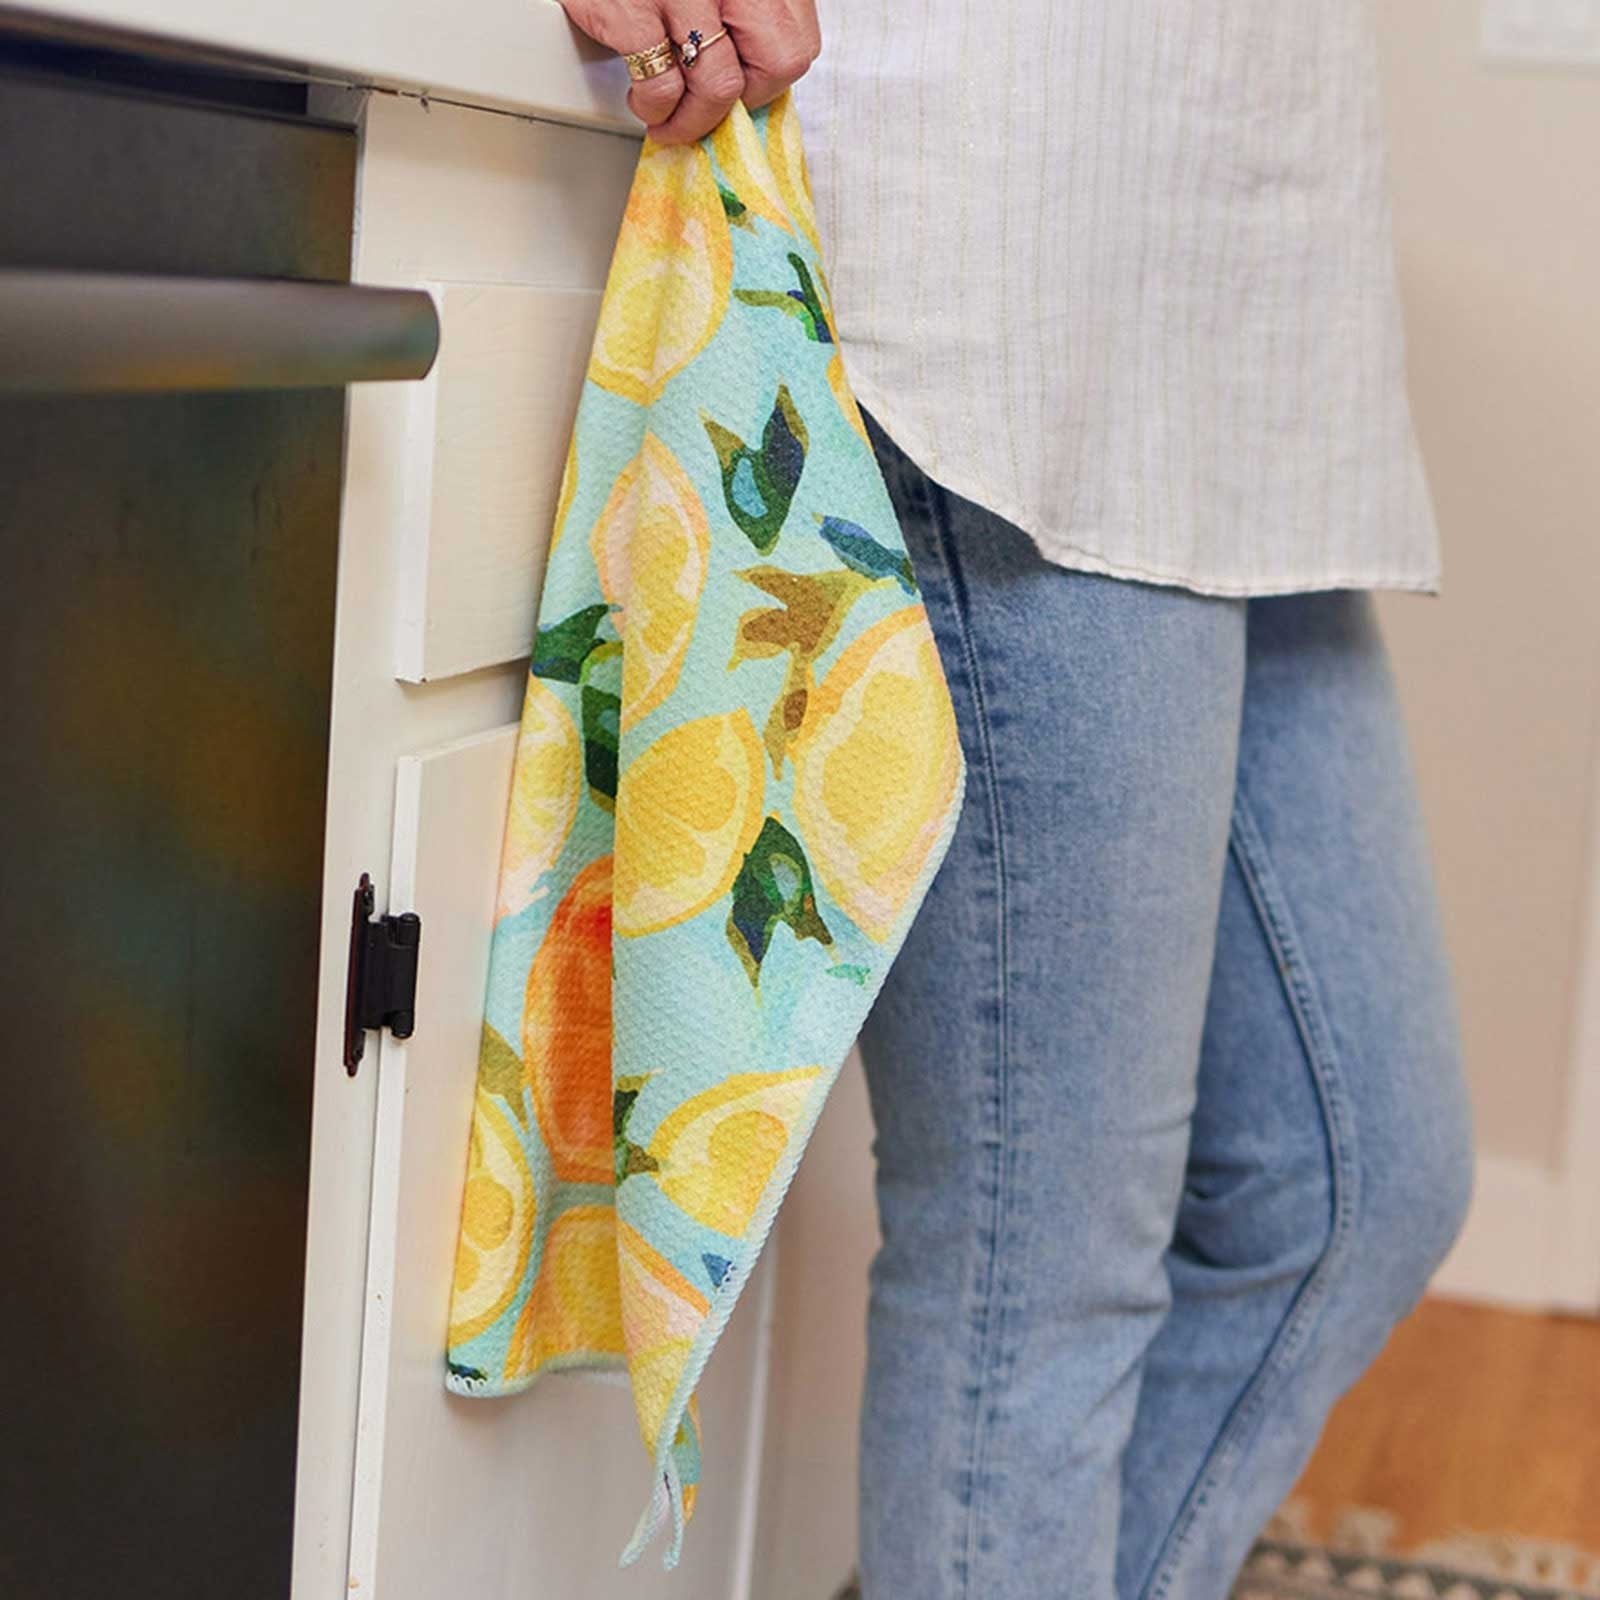 New Kitchen Towel Prints Have Arrived! - Rock Flower Paper